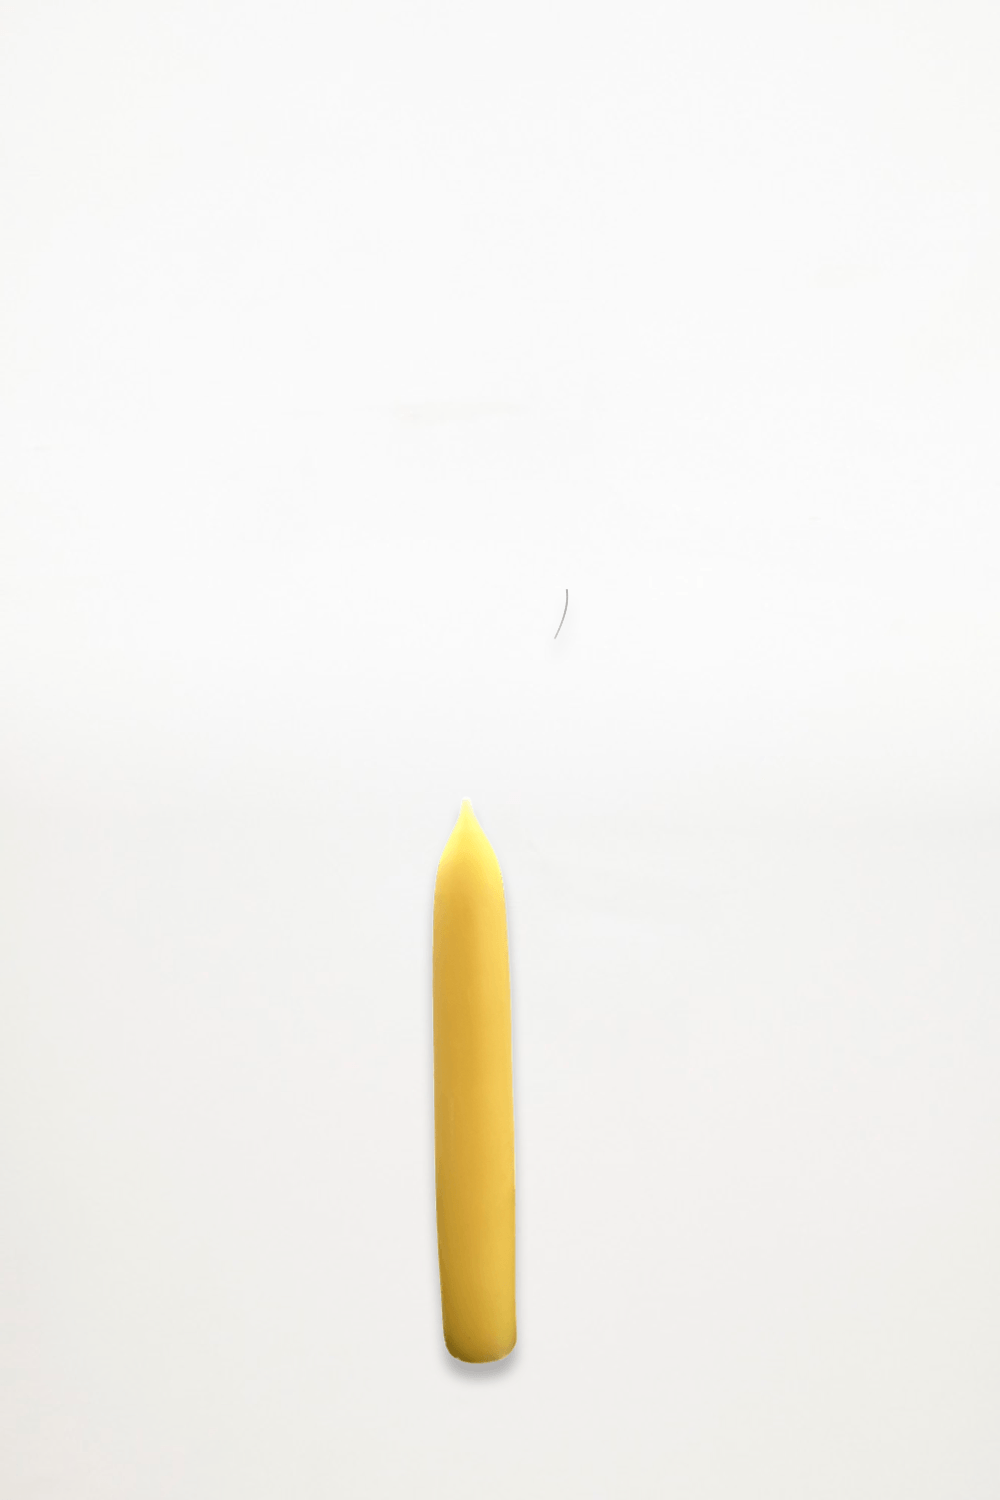 Golden Sun - 100% Australian Beeswax Candles - 21mm Taper Candle - Ensemble Studios